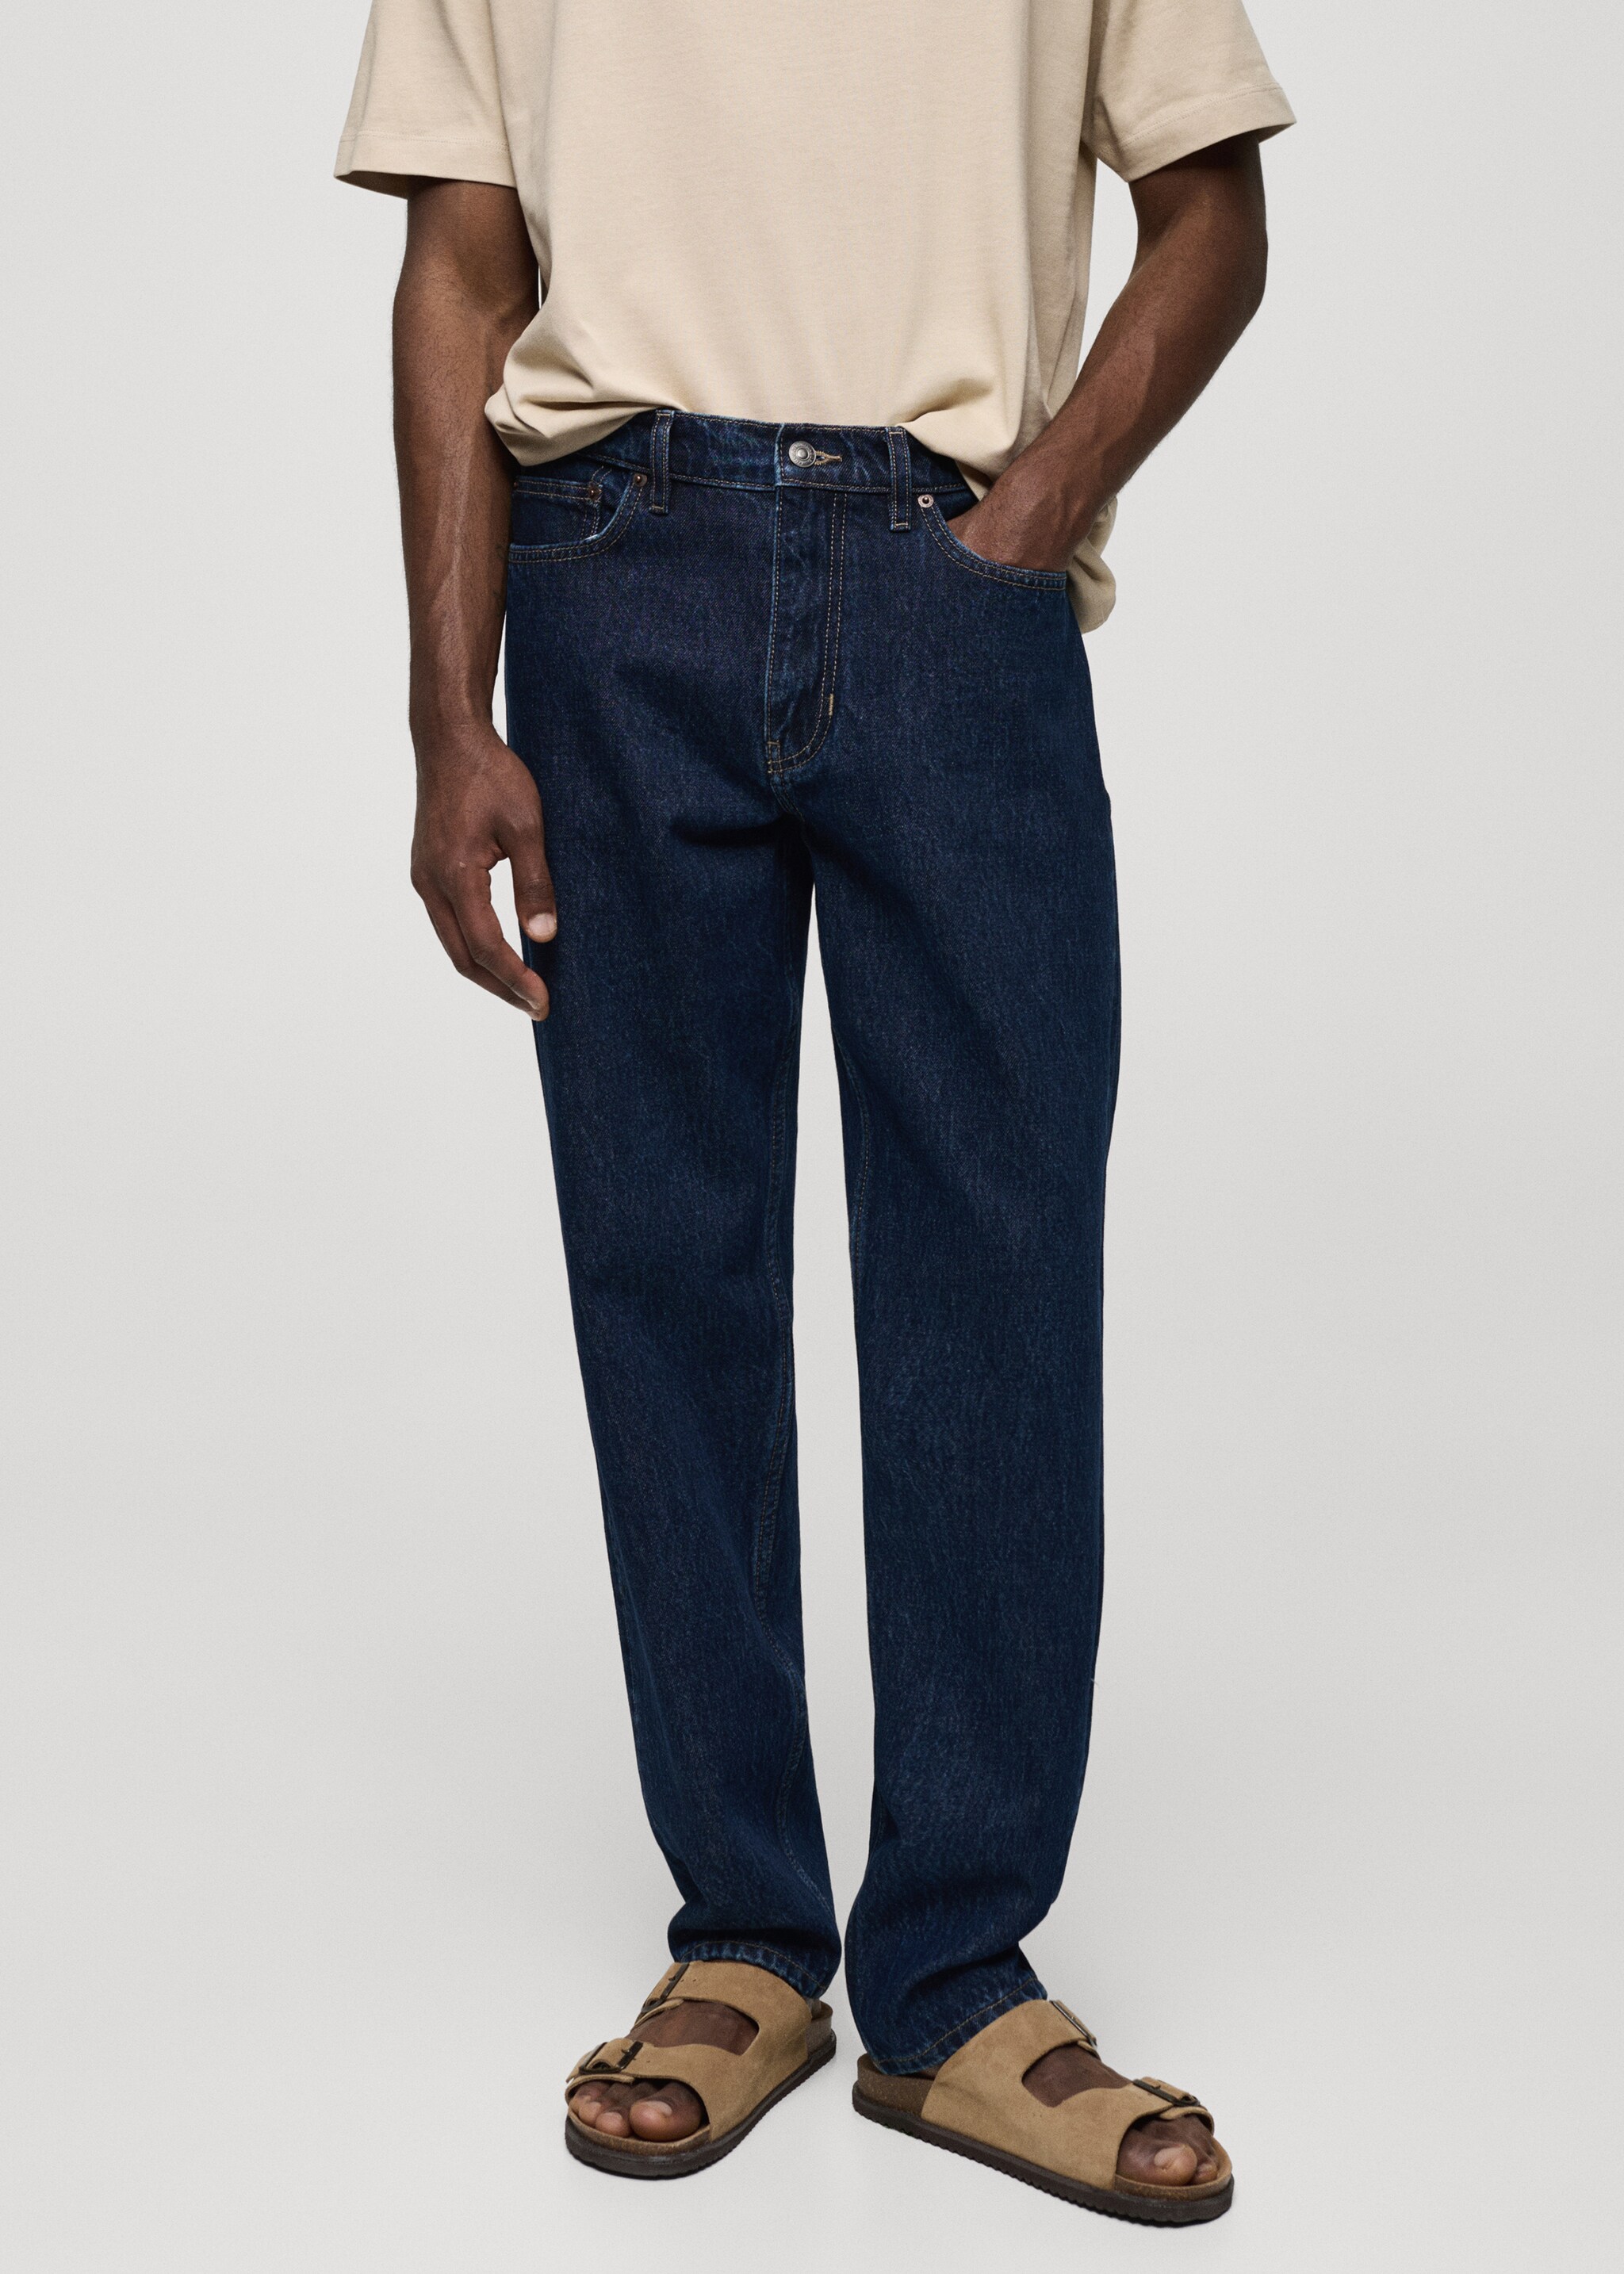 Jeans Bob straight fit - Plano medio